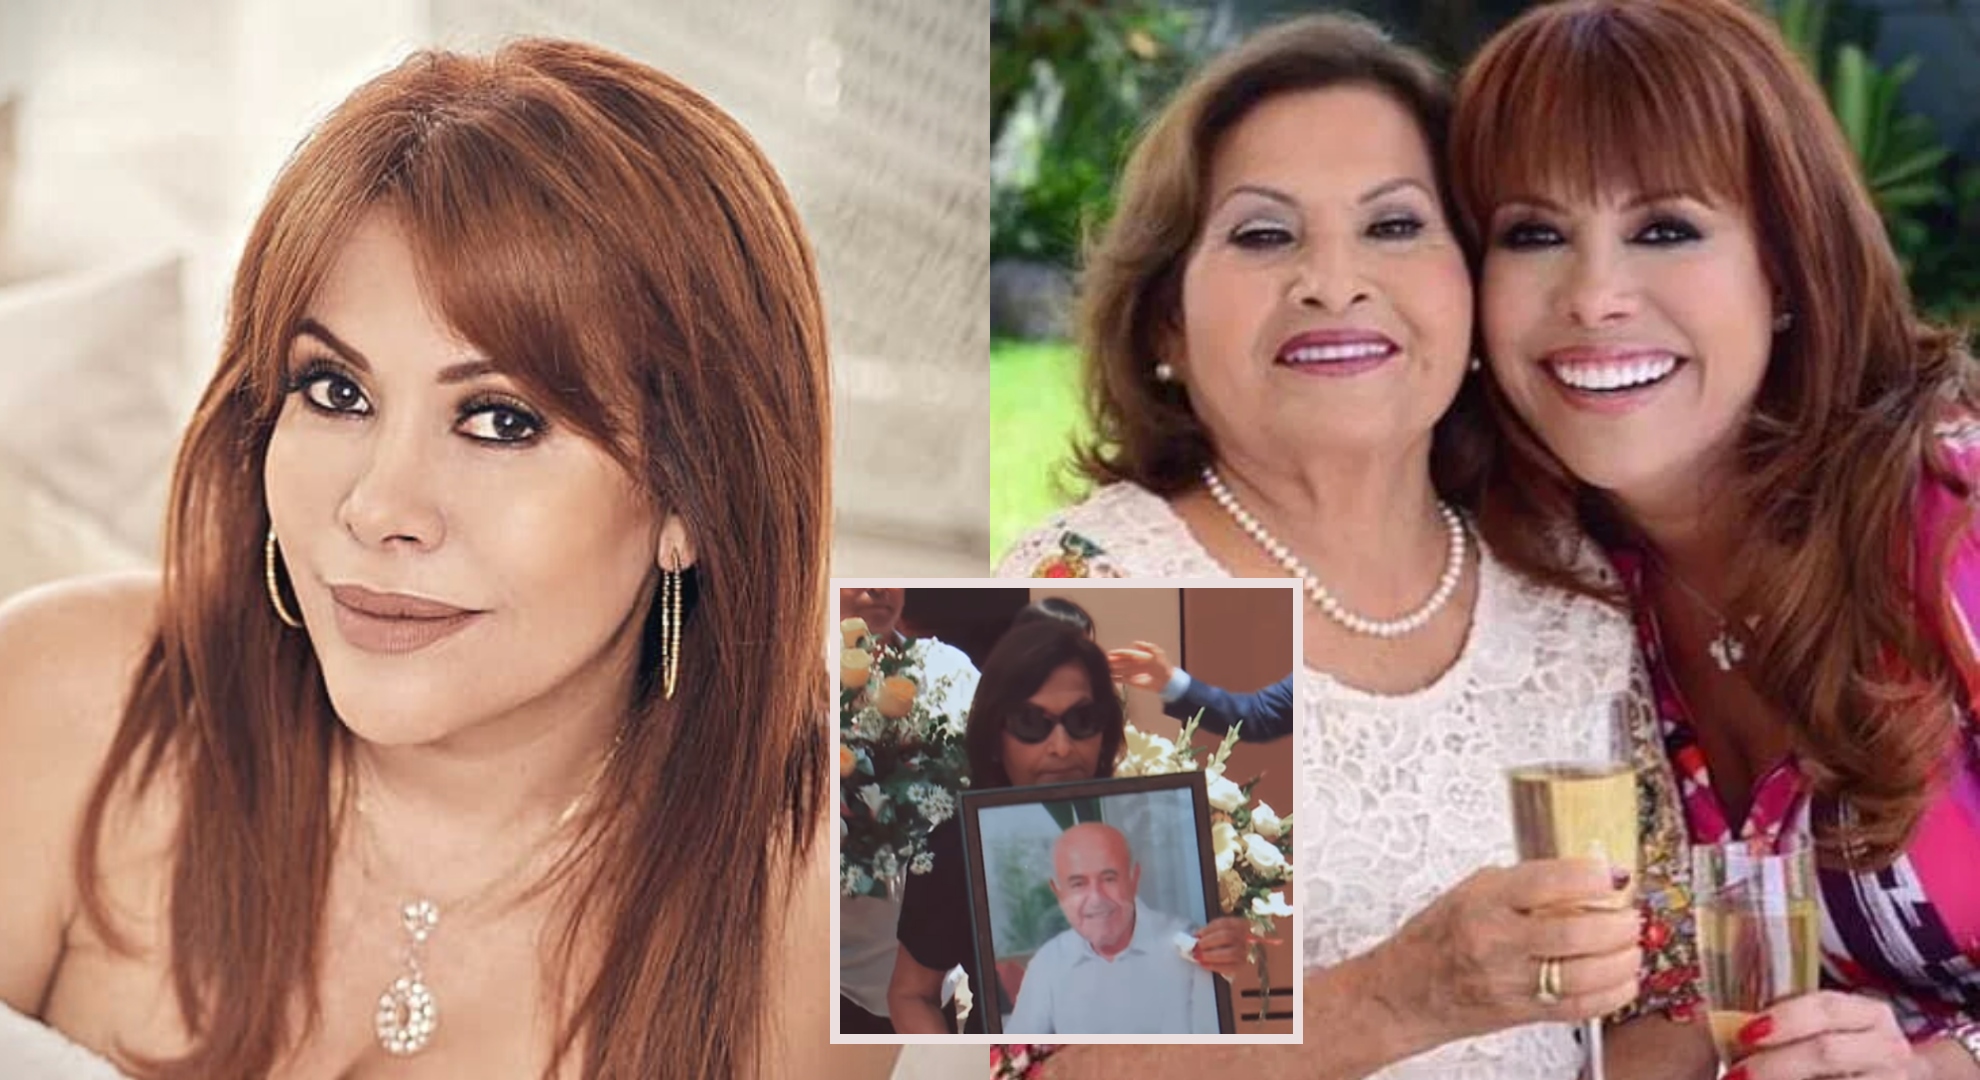 Magaly Medina preocupada por su mamá tras la muerte de su padre: “Tiene que empezar sola esta vez”